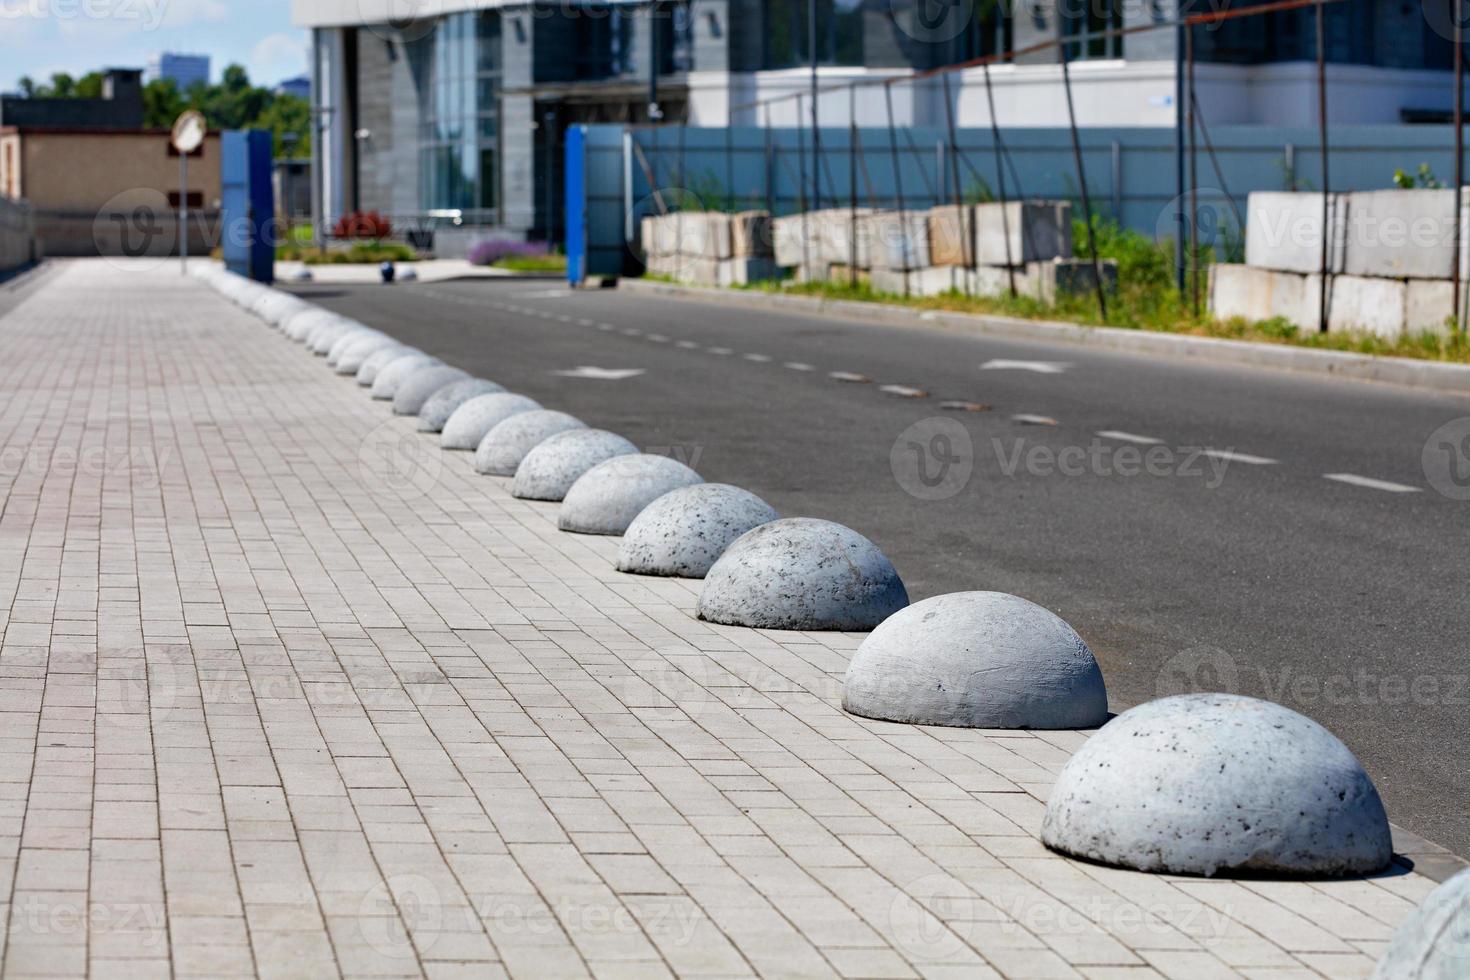 de rijbaan en het voetpad worden gescheiden door betonnen halve bollen die zich diagonaal in de verte uitstrekken. foto